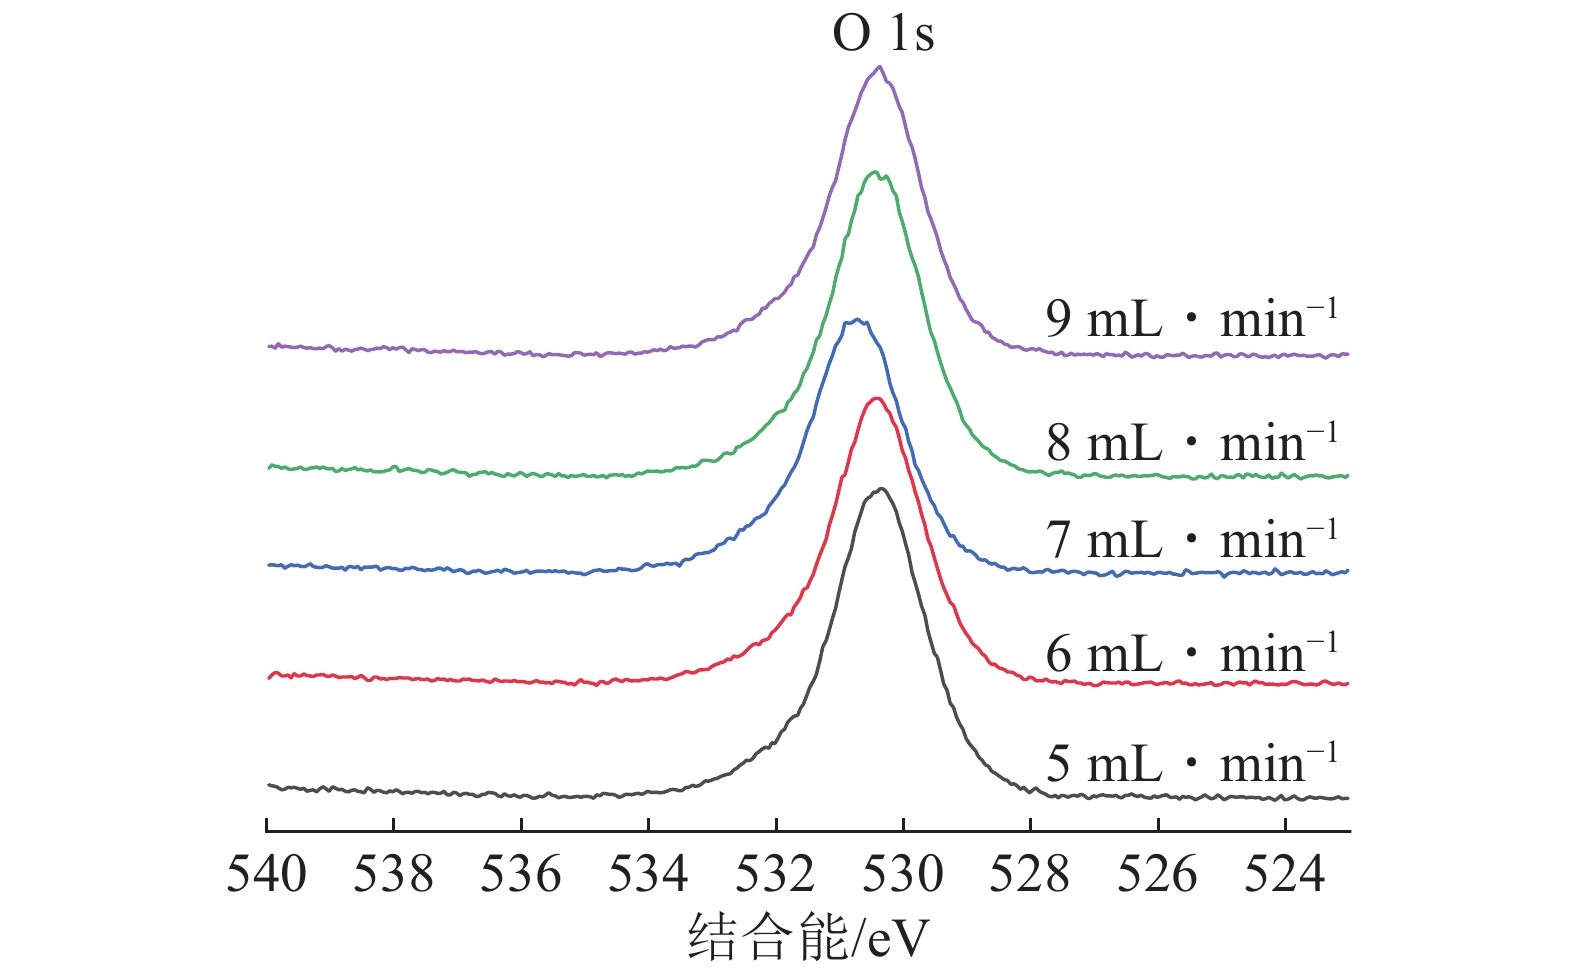 氧气流量对于磁过滤阴极真空弧法制备ZrO2薄膜特性的影响